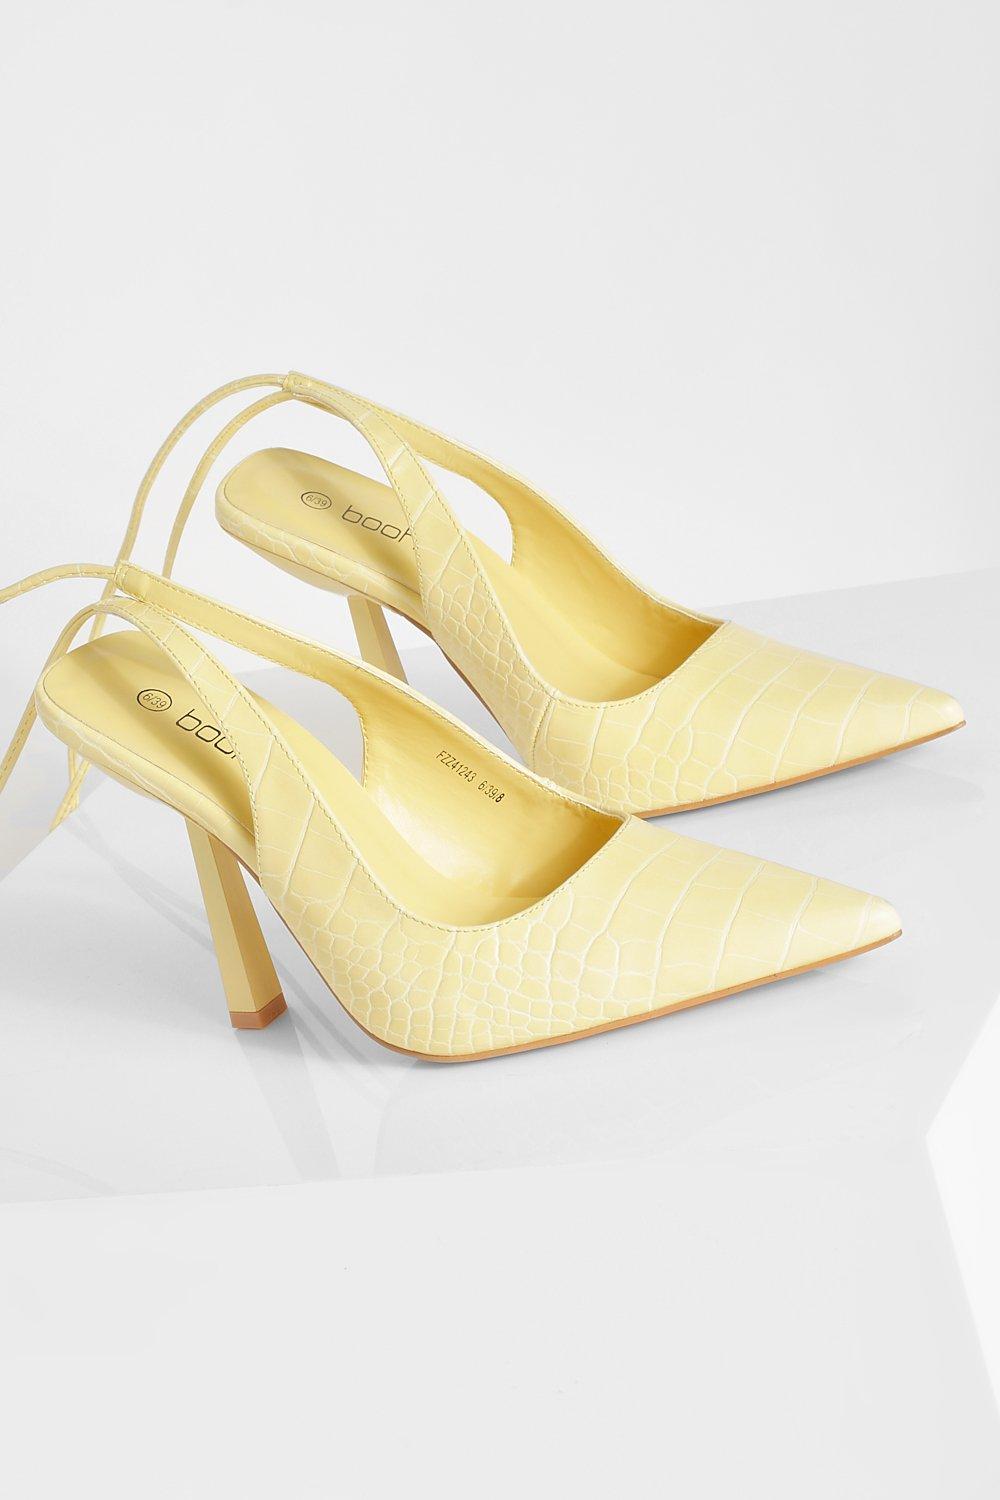 pale lemon shoes